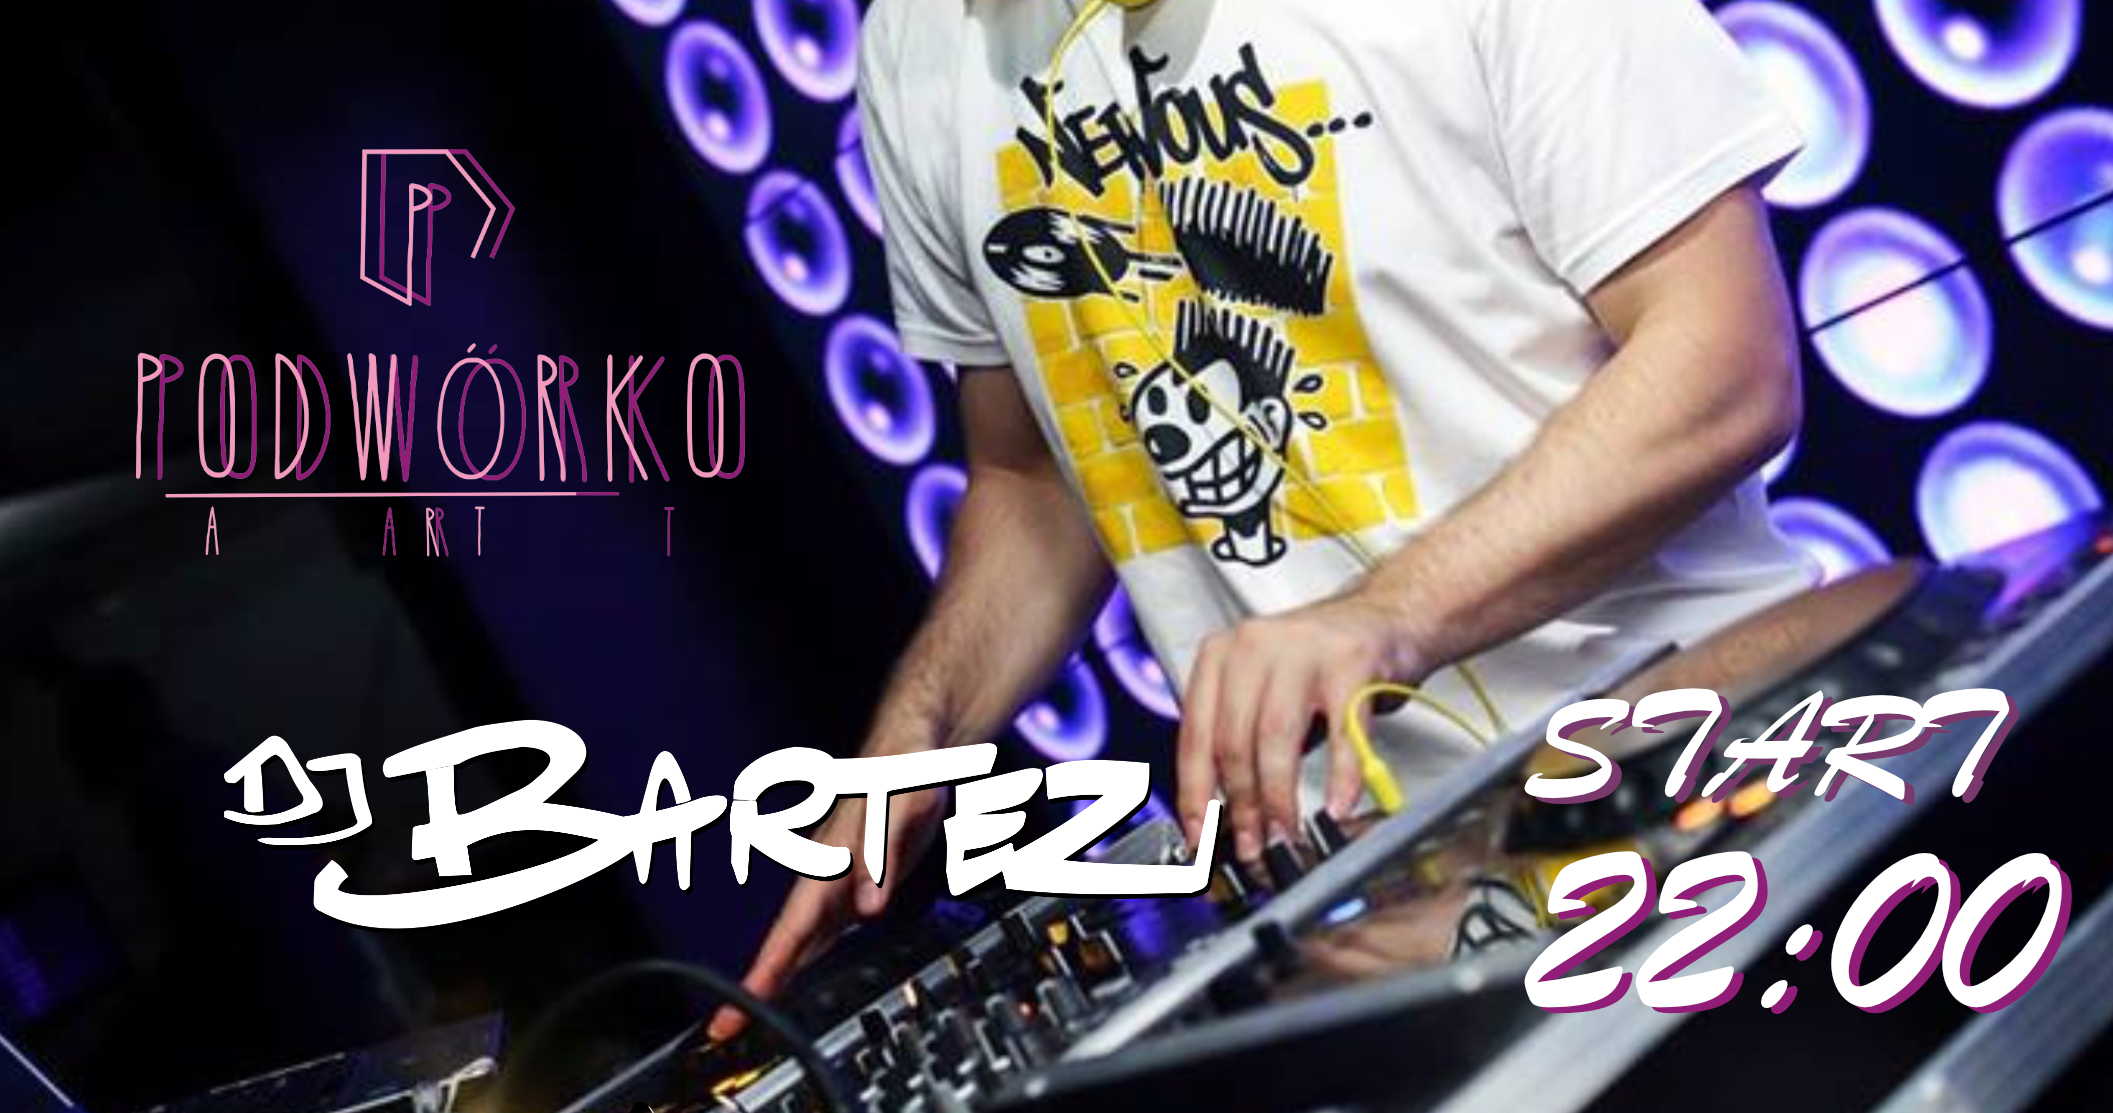 DJ Bartez